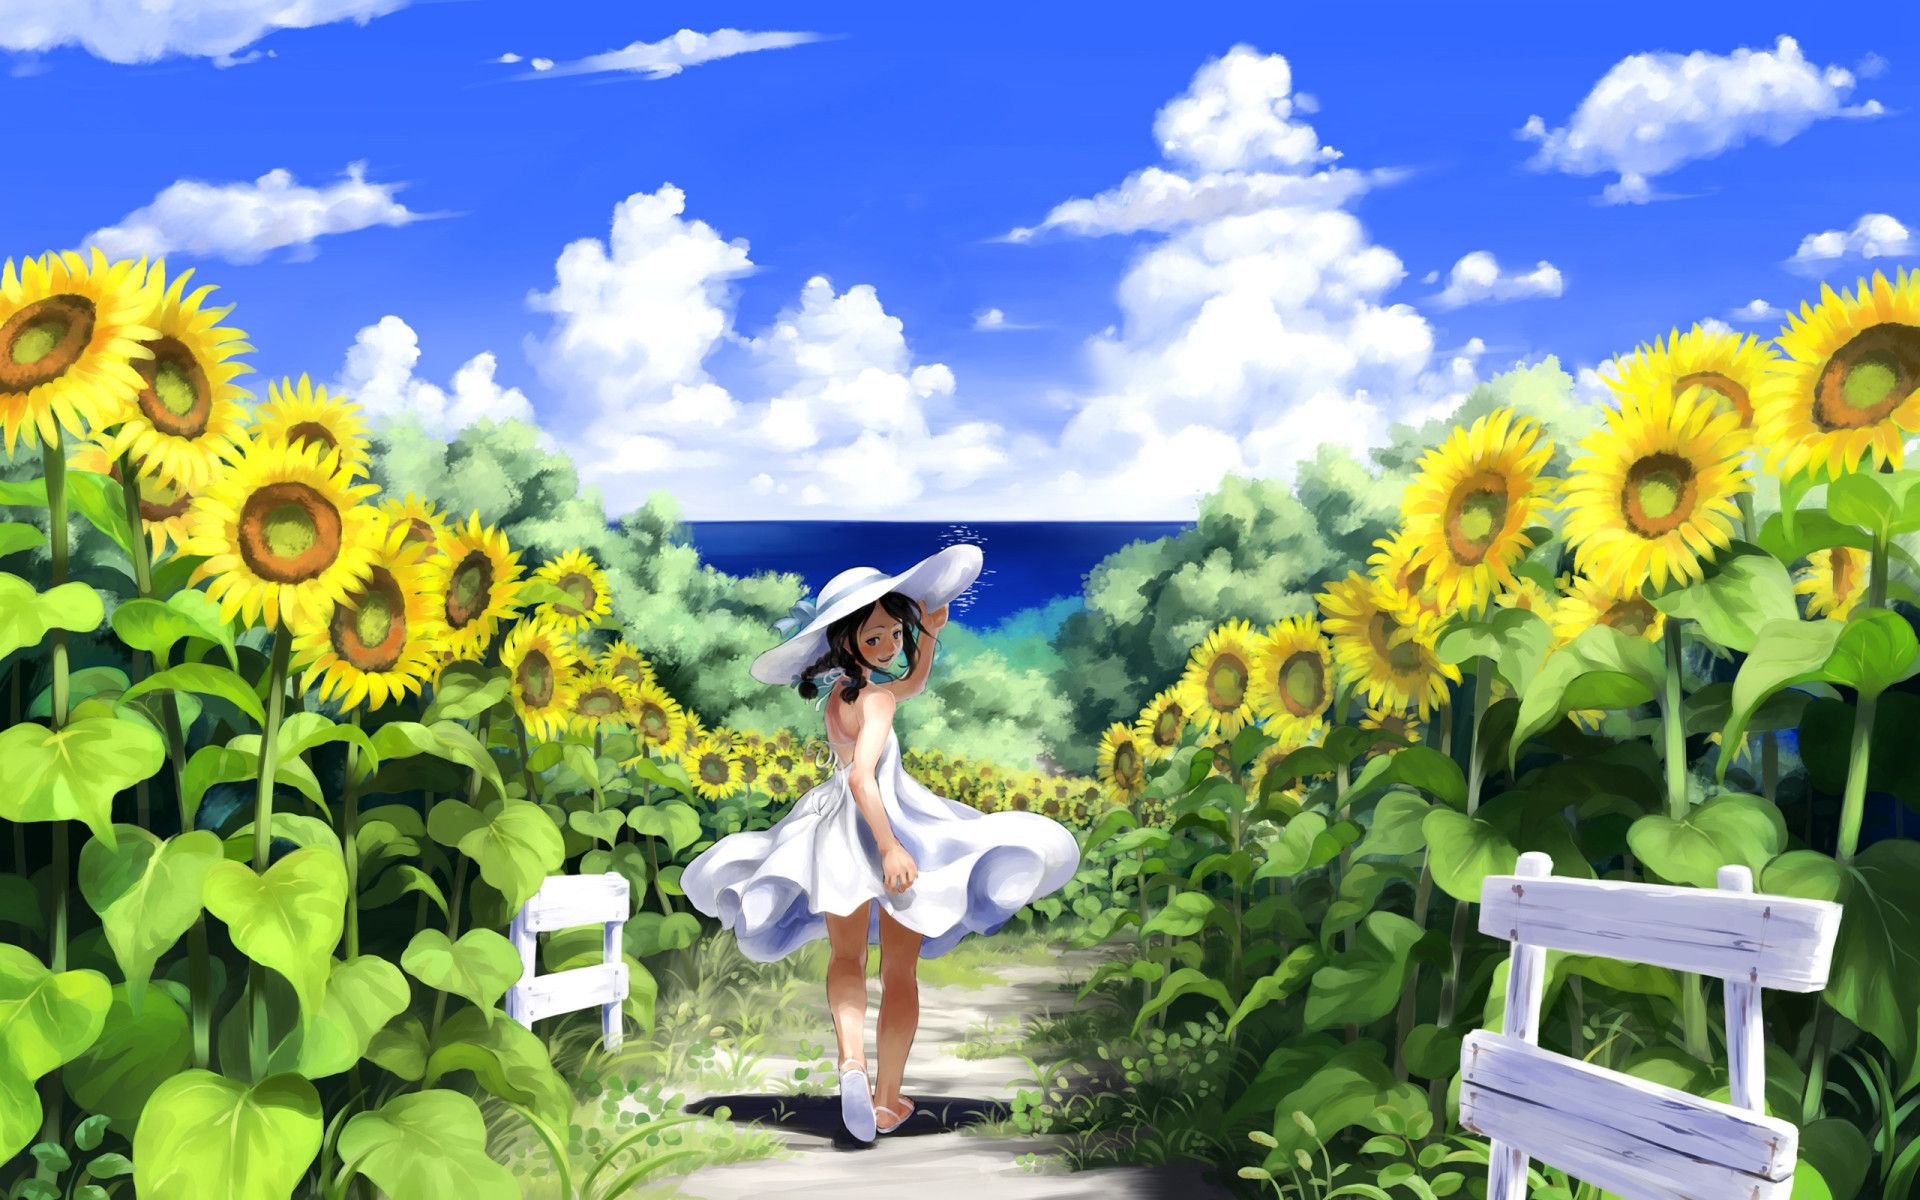 Ảnh Anime Đẹp 』 - #151 : Hoa hướng dương - Wattpad